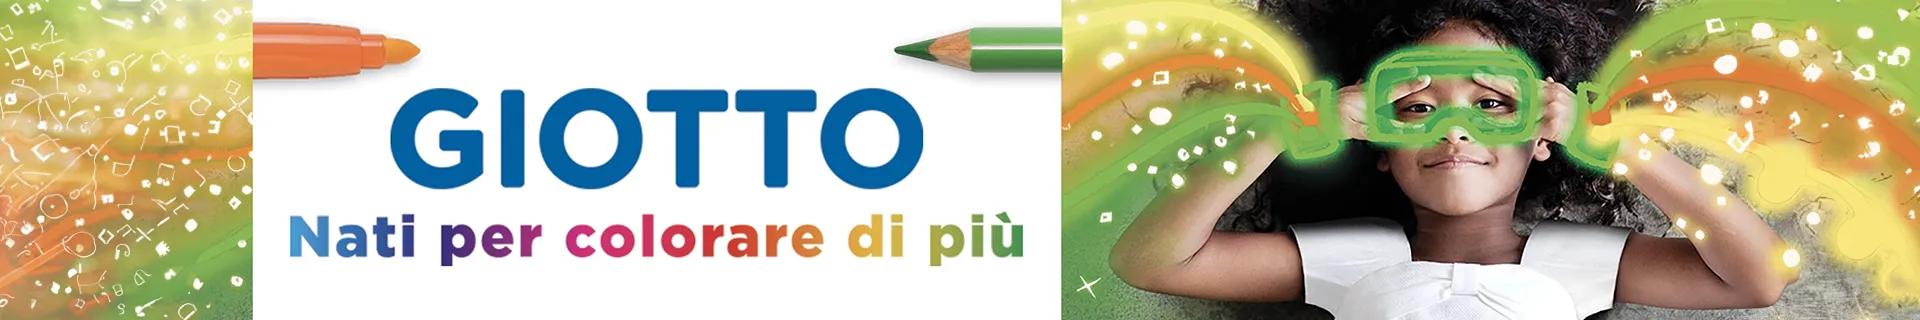 Fila Giotto: Scopri le Migliori Offerte Online | Giodicart